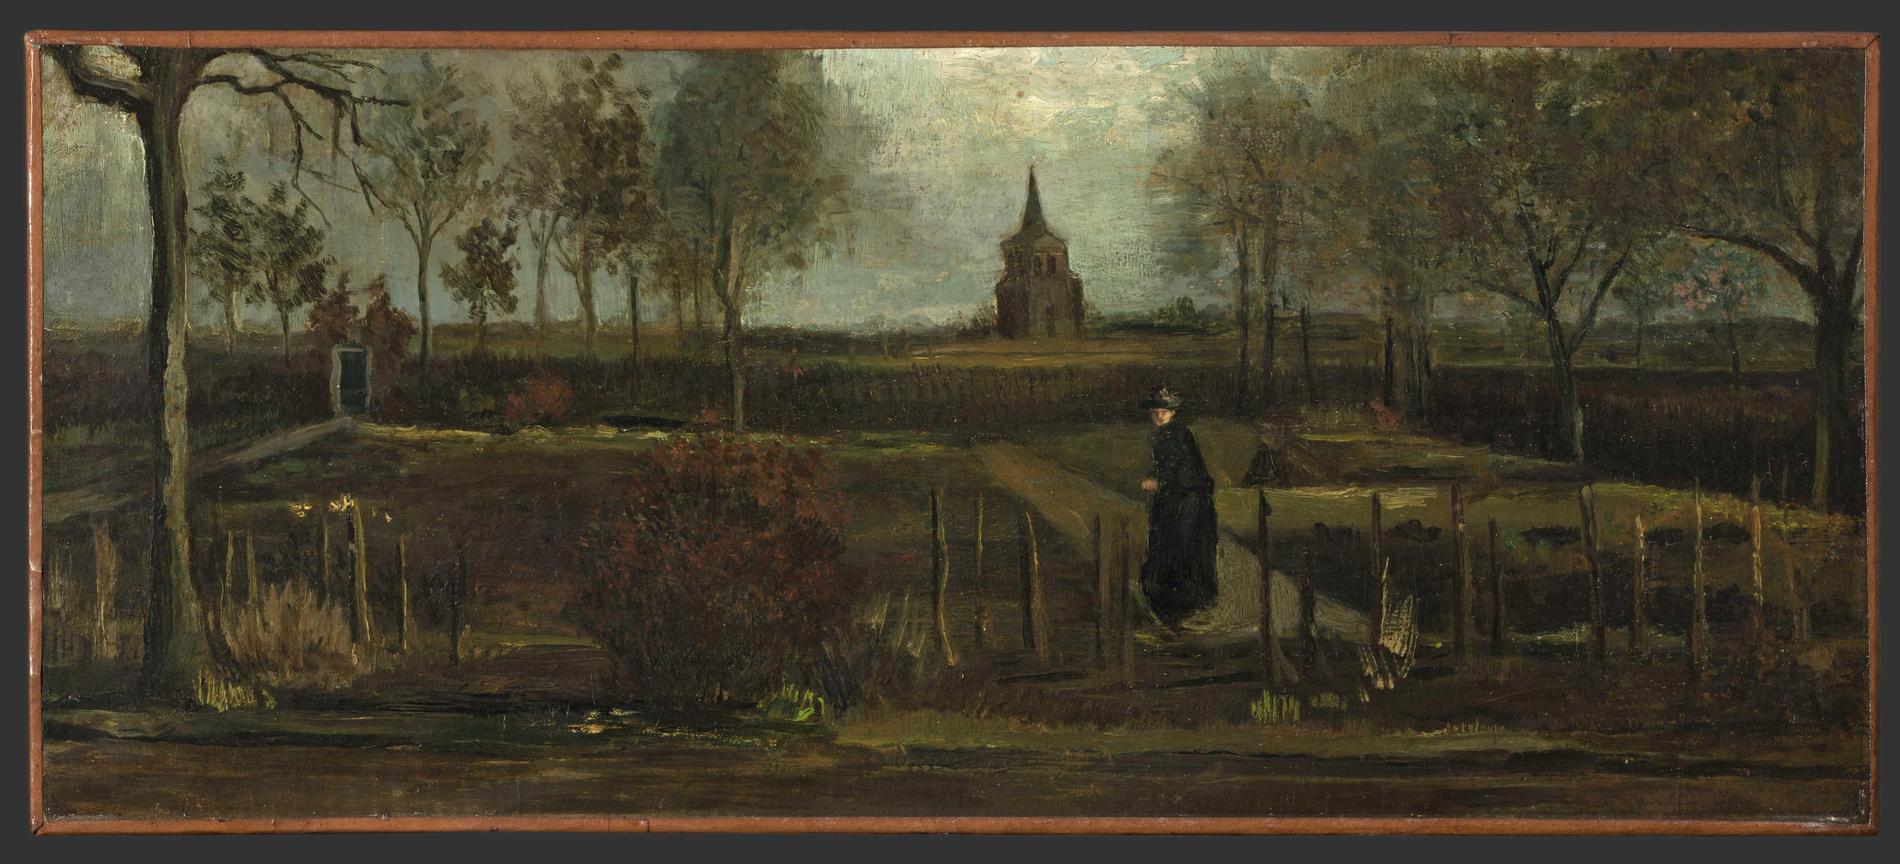 Van Goghs målning ”Spring Garden”.